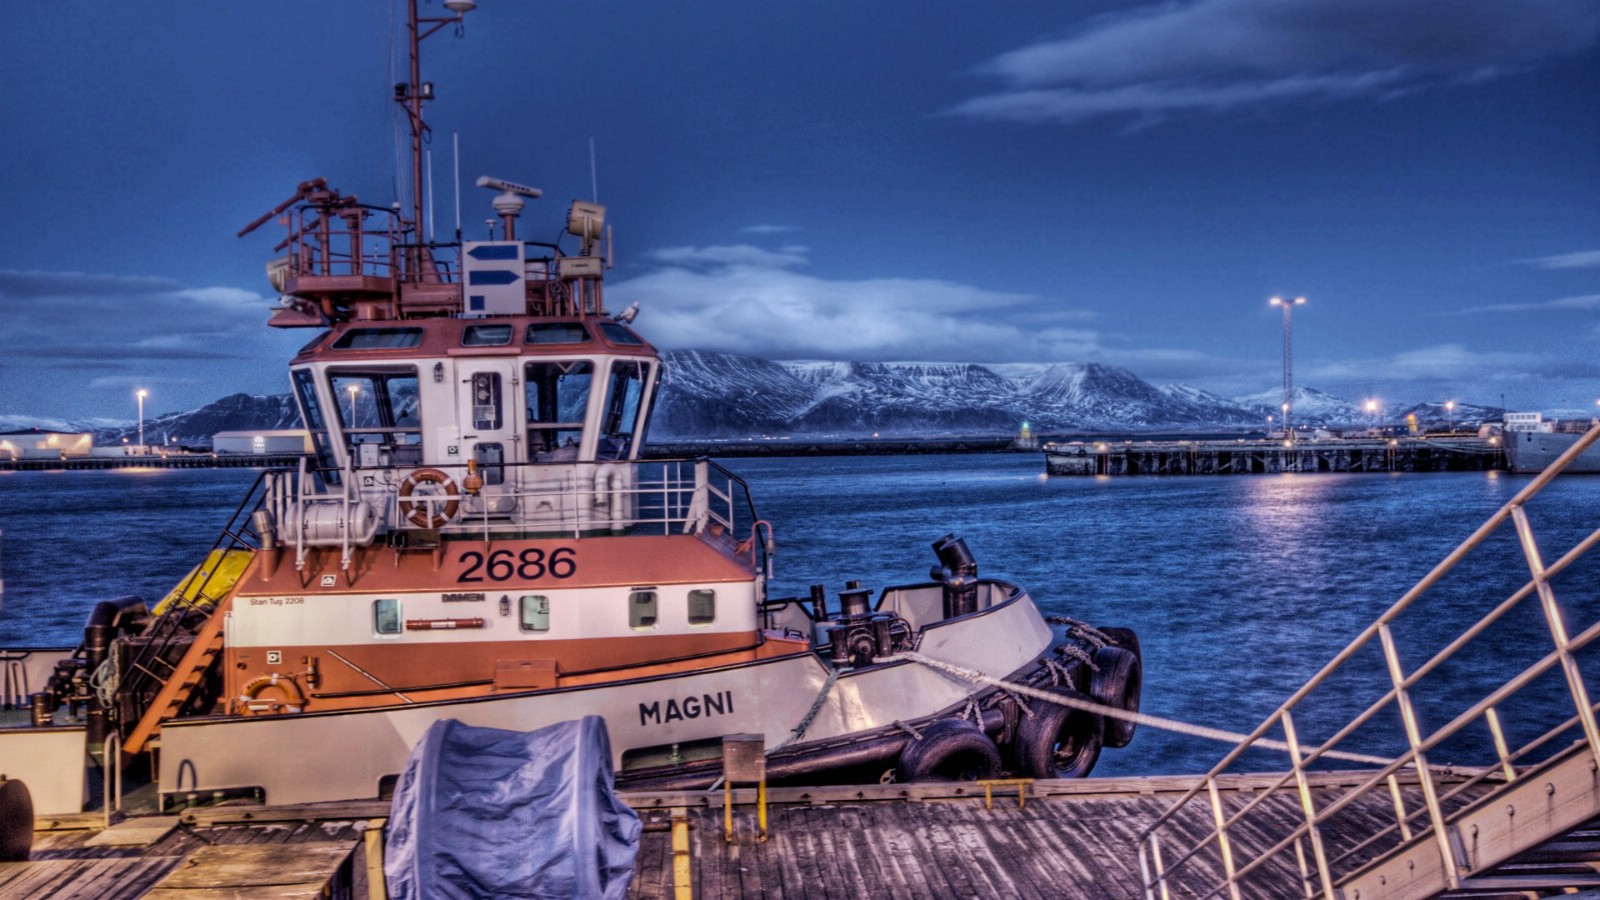 壁纸1600x900 冰岛的捕鲸渔船图片 Iceland 冰岛捕鲸船壁纸壁纸 HDR 冰岛风光宽屏壁纸壁纸 HDR 冰岛风光宽屏壁纸图片 HDR 冰岛风光宽屏壁纸素材 人文壁纸 人文图库 人文图片素材桌面壁纸